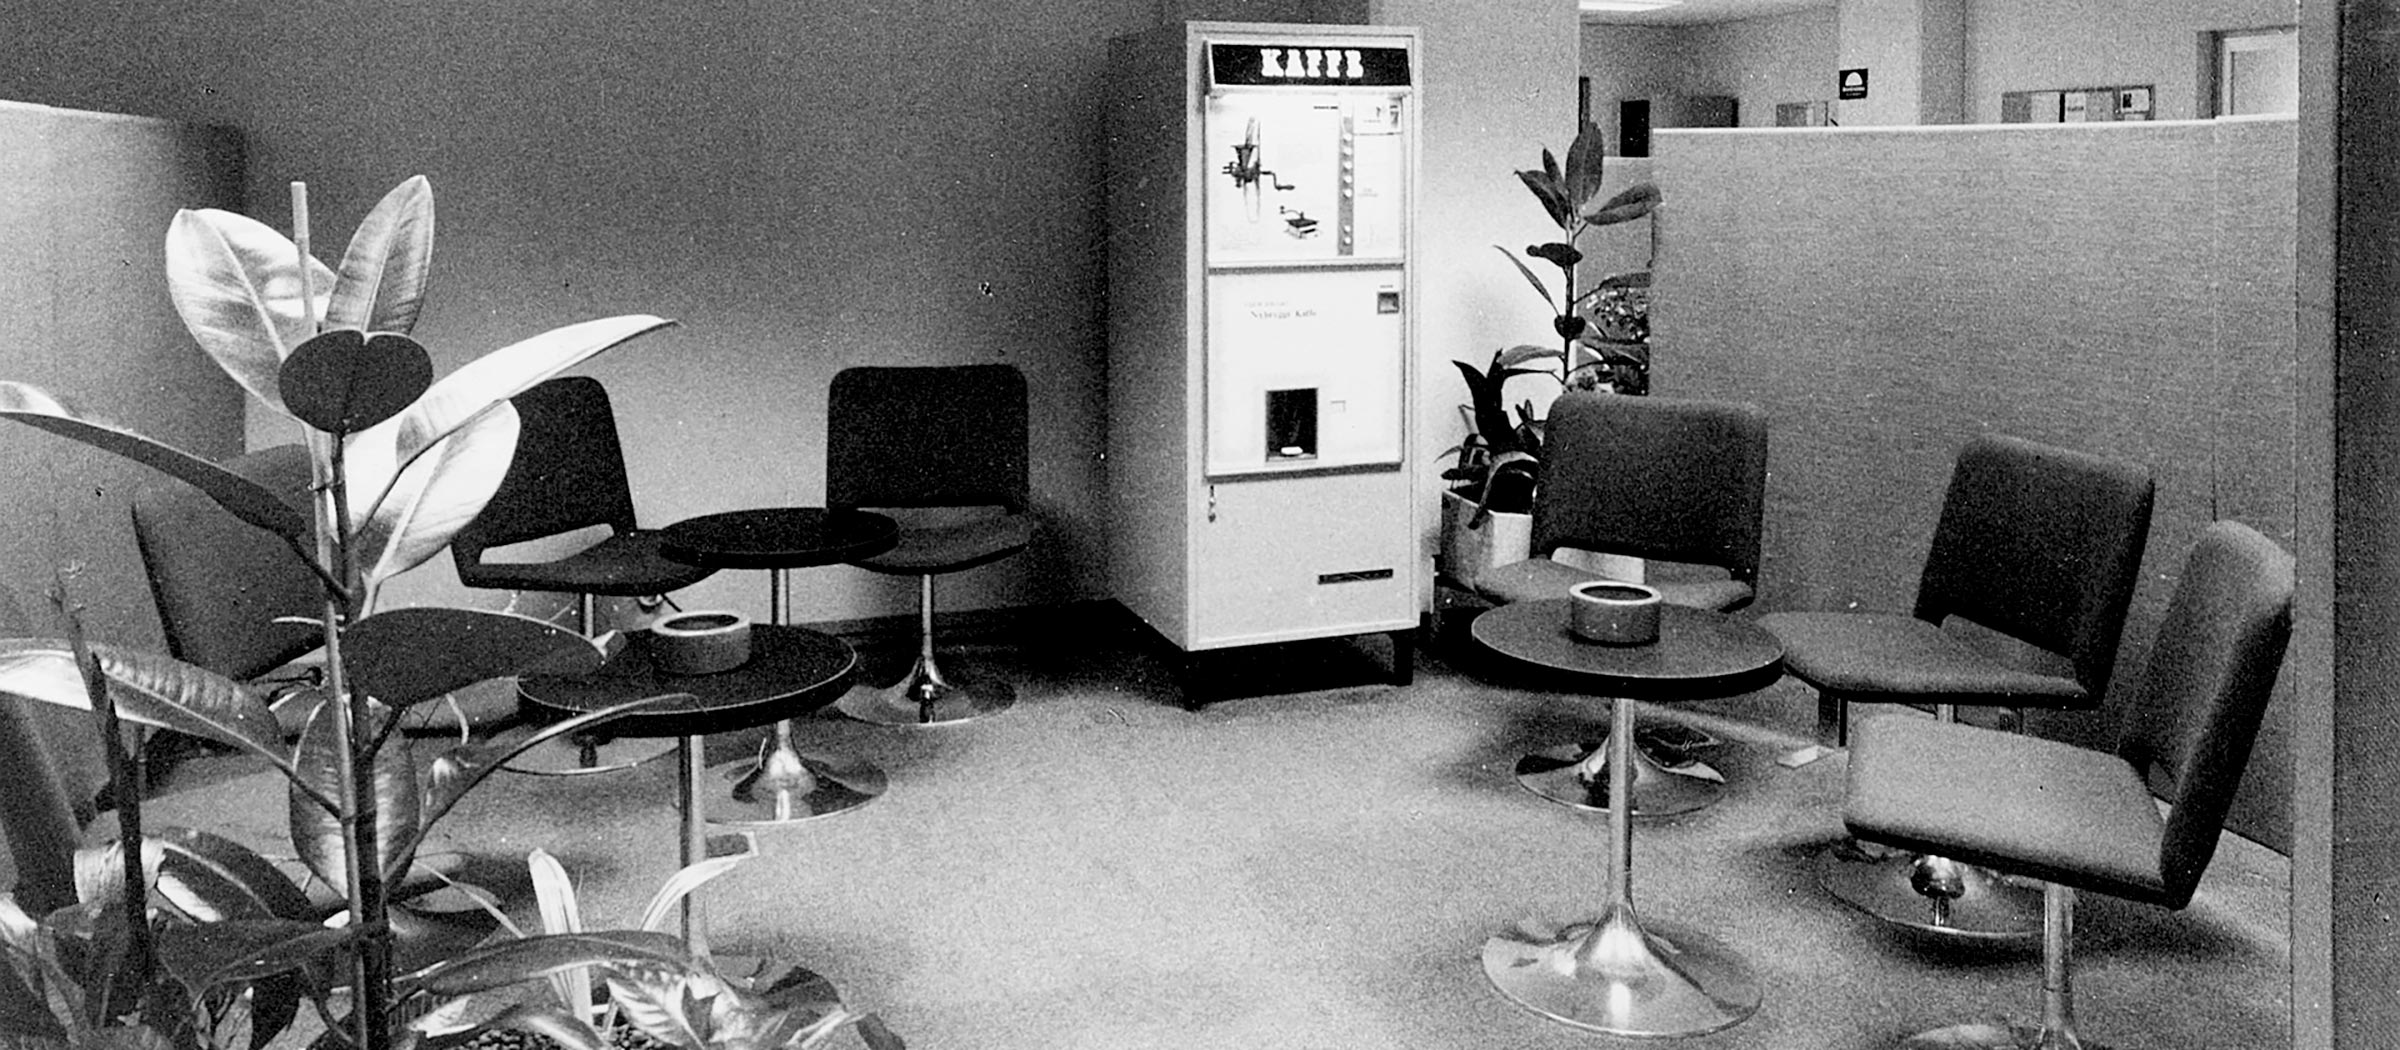 Pausrum i Postbankens lokaler i Stockholm 1968.